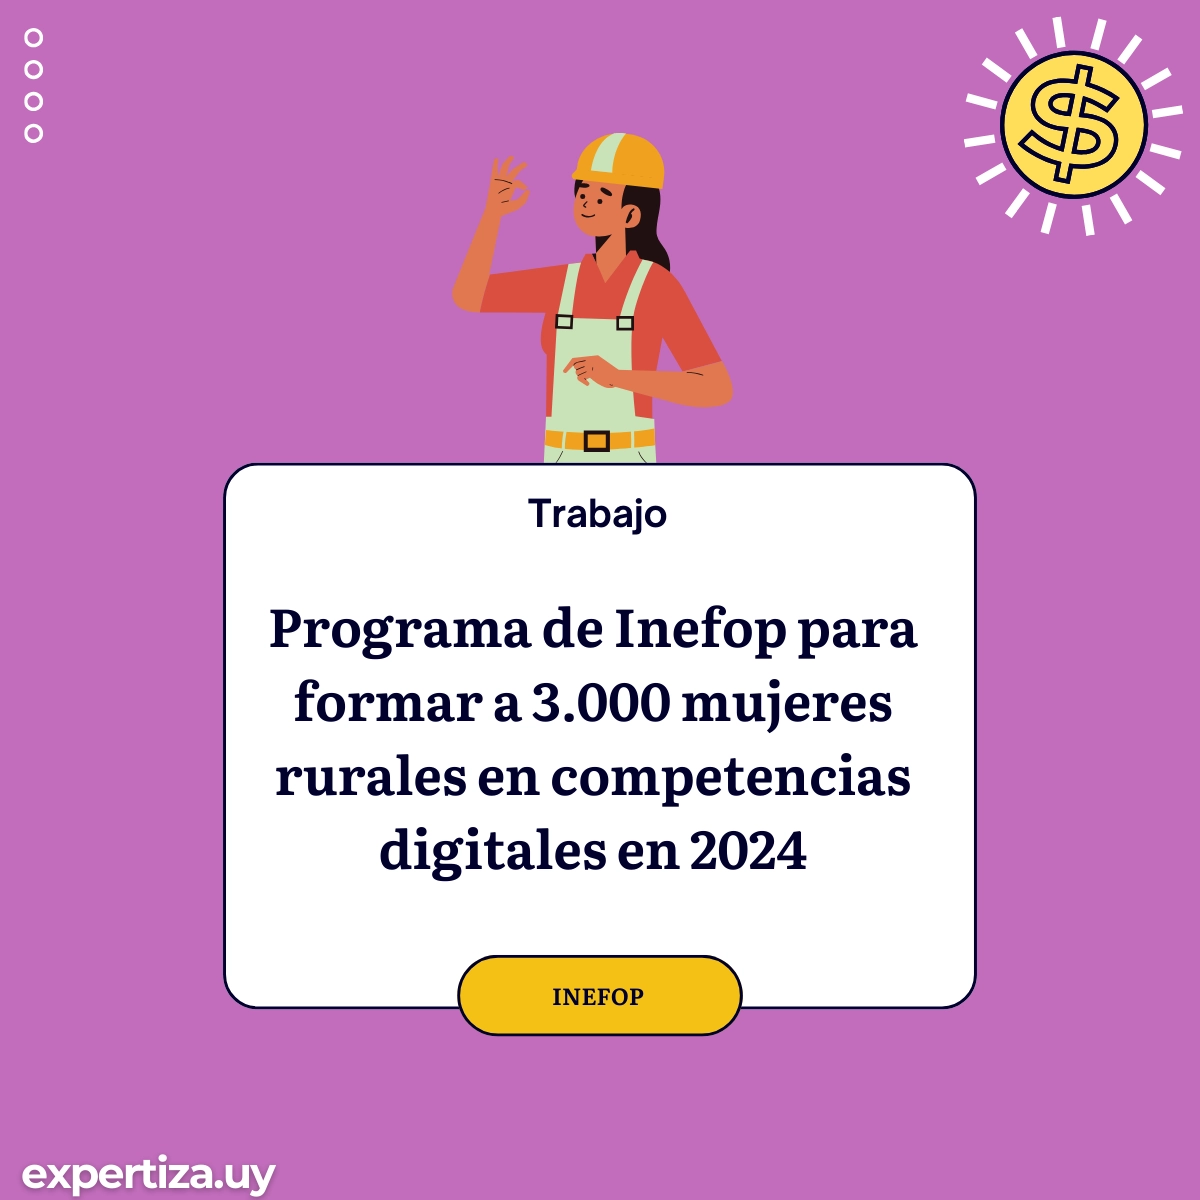 Programa de Inefop para formar a 3.000 mujeres rurales en competencias digitales en 2024.